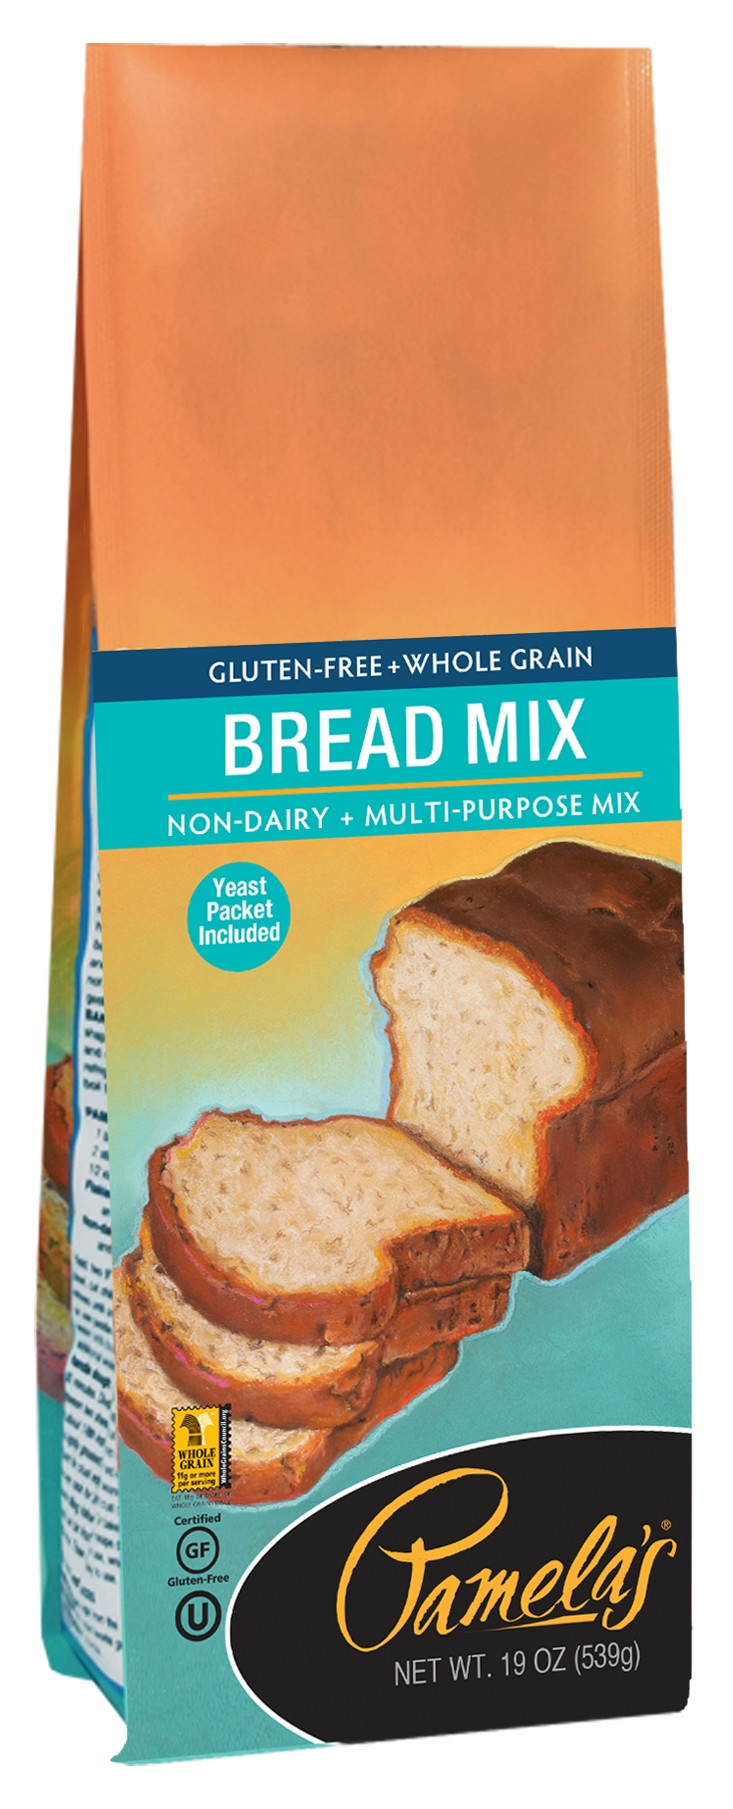 Gluten Free Bread Mix
 Gluten Free Bread Mix